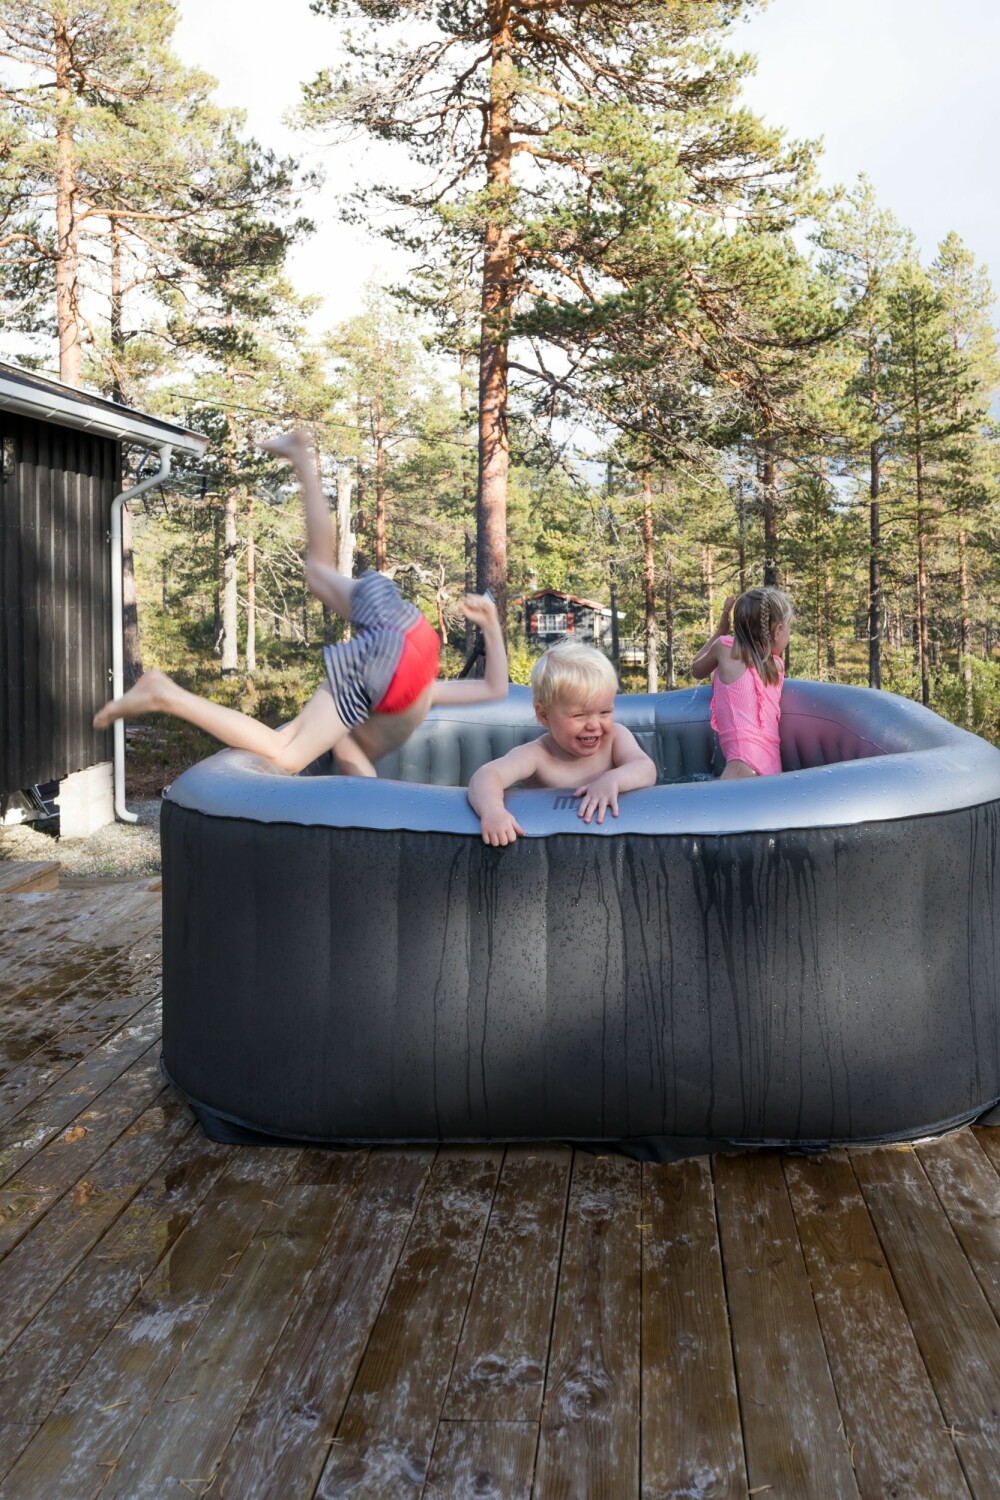 Barna storkoser seg i det oppblåsbare bassenget, som er fra Mspa og kjøpt brukt. Det enkelt å tømme bassenget for luft og pakke det bort. 